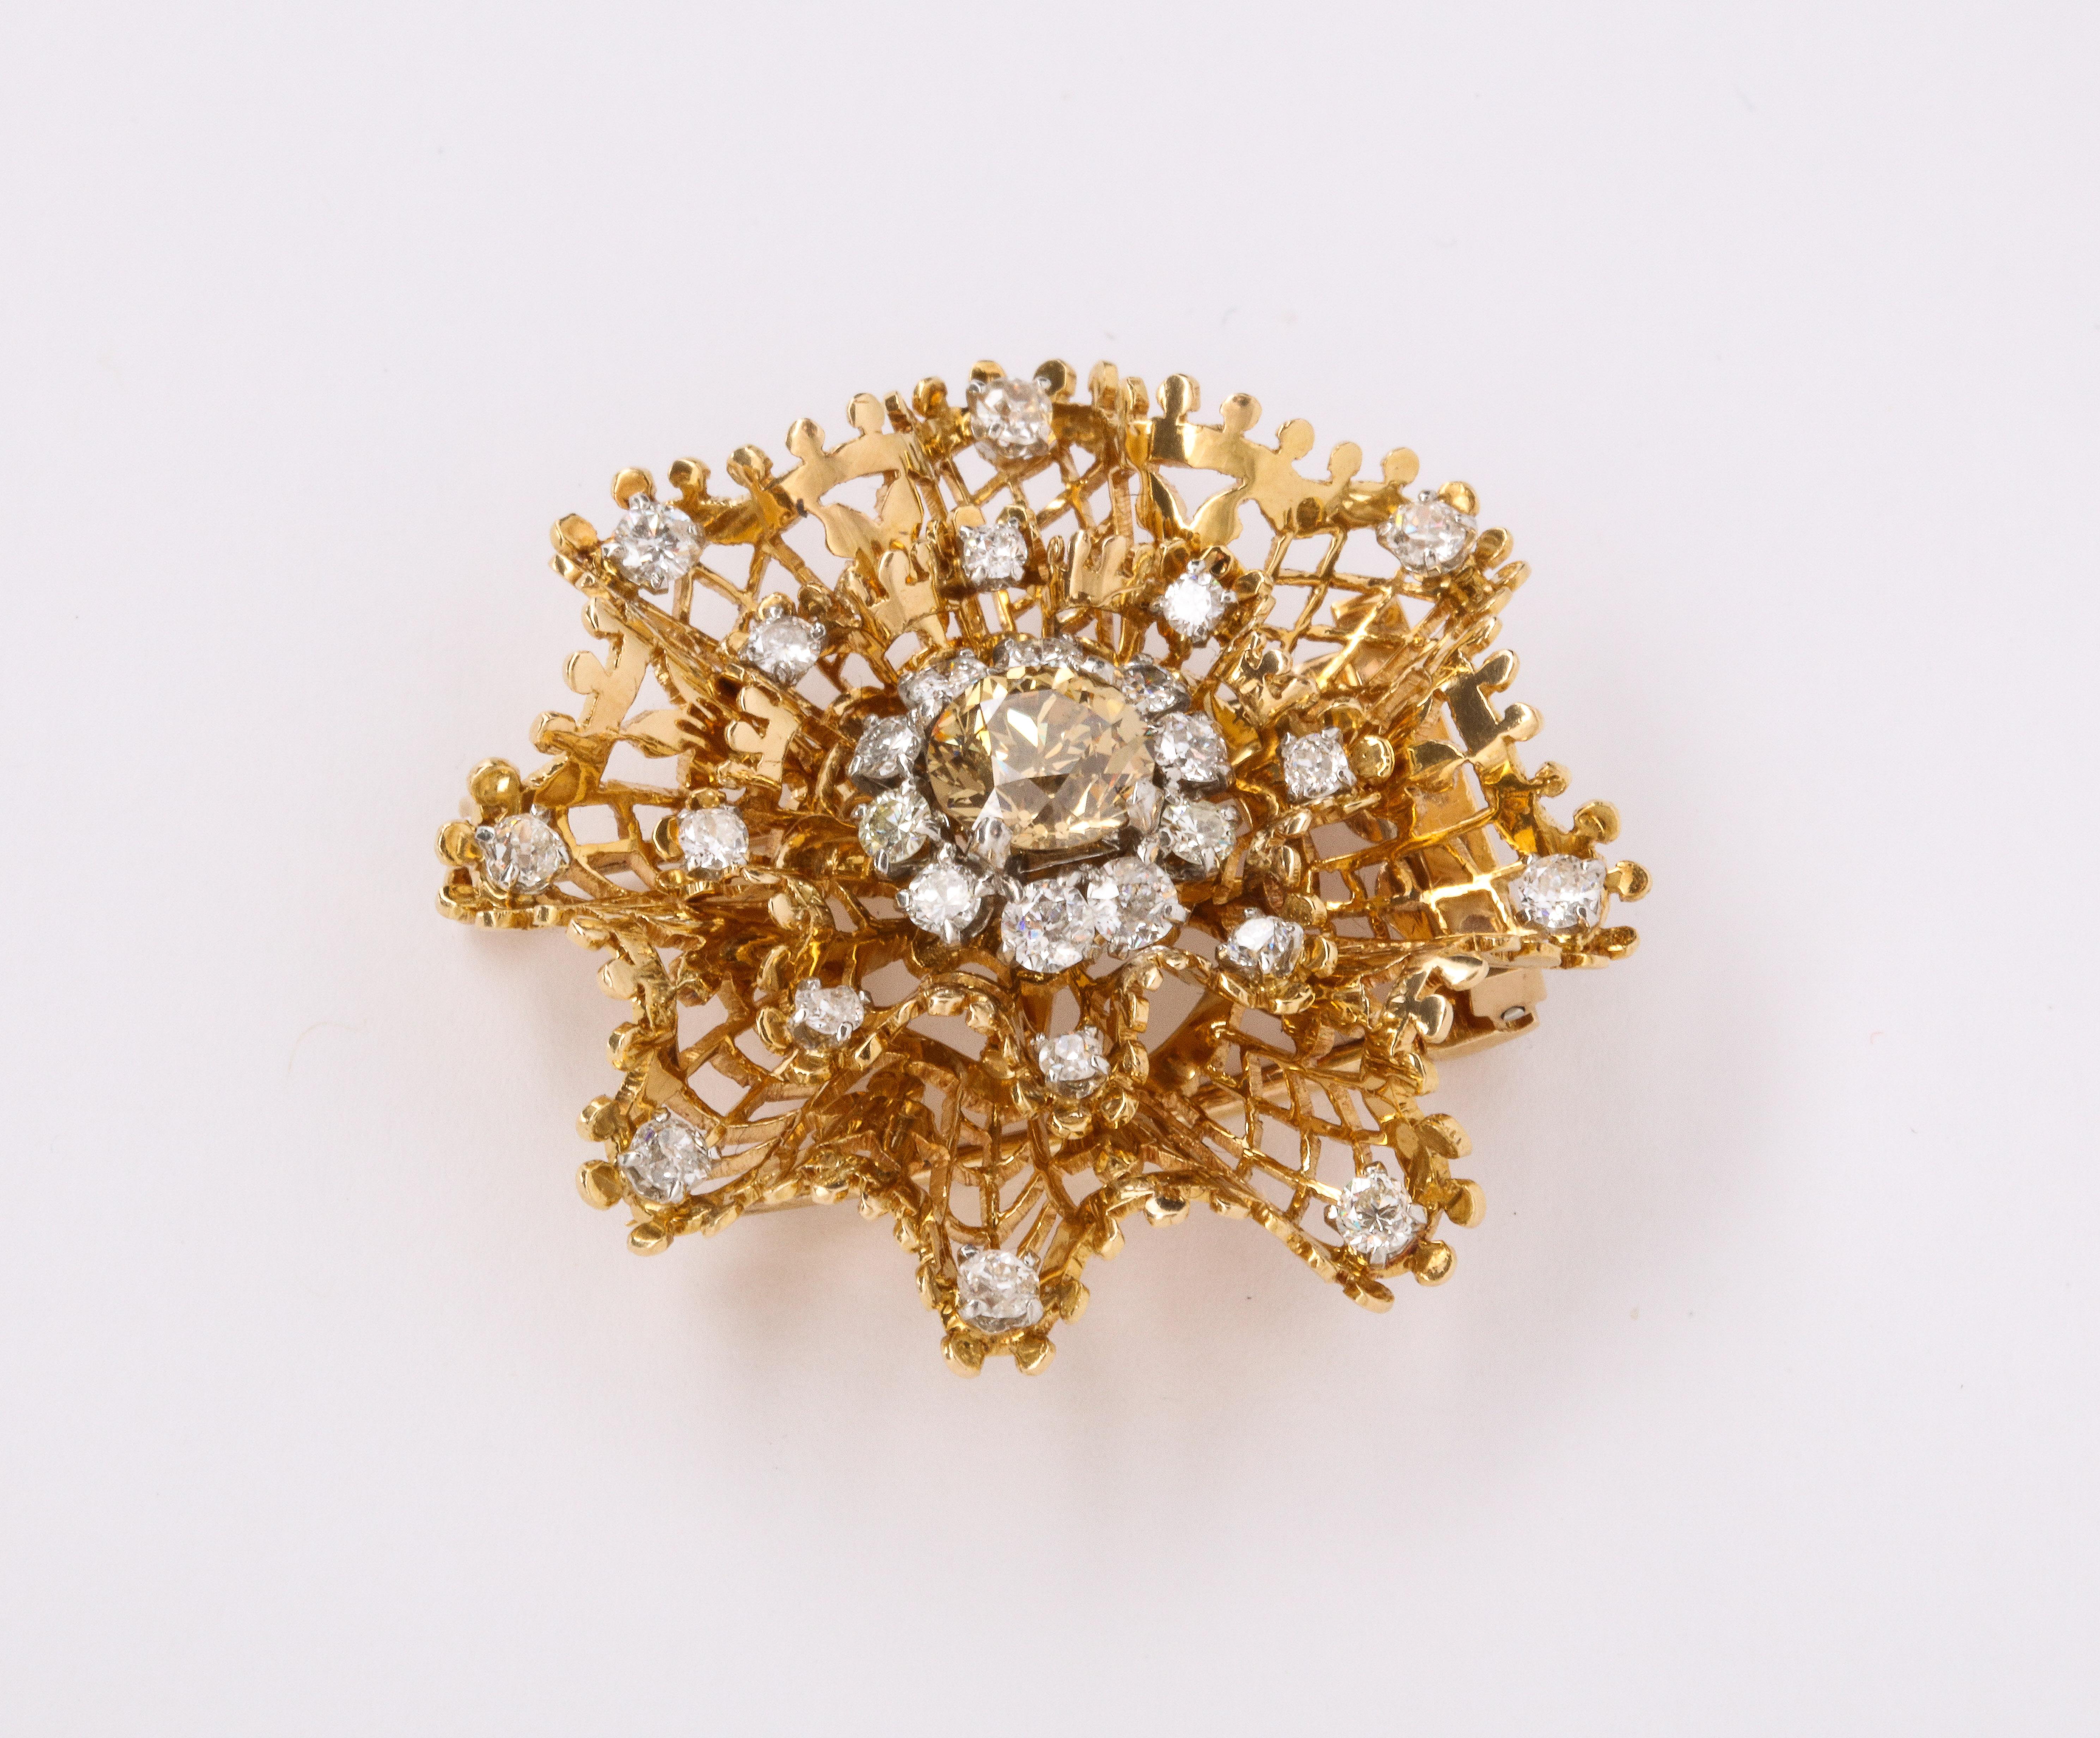 Van Cleef & Arpels Diamond Dentelle Flower Brooch, 18K Yellow Gold Circa 1950
Center Diamond Weight:  approx 1.15 Cts
Side Diamond Weight: approx 1.75 Cts
Measurements: 1.25